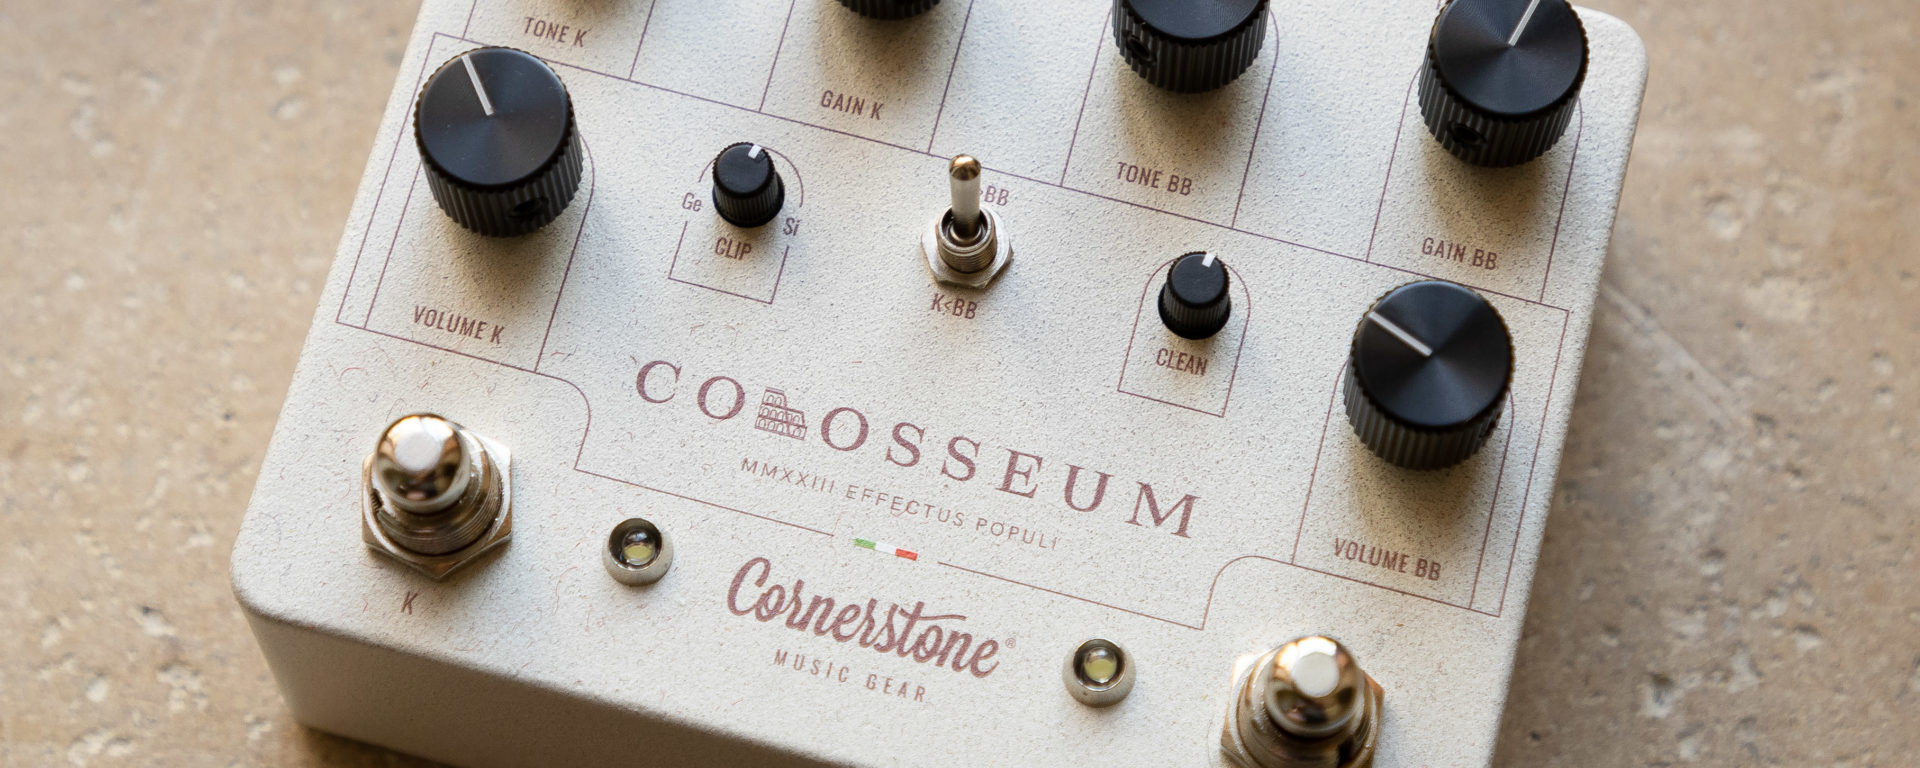 Cornerstone Music Gear - Colosseum Overdrive